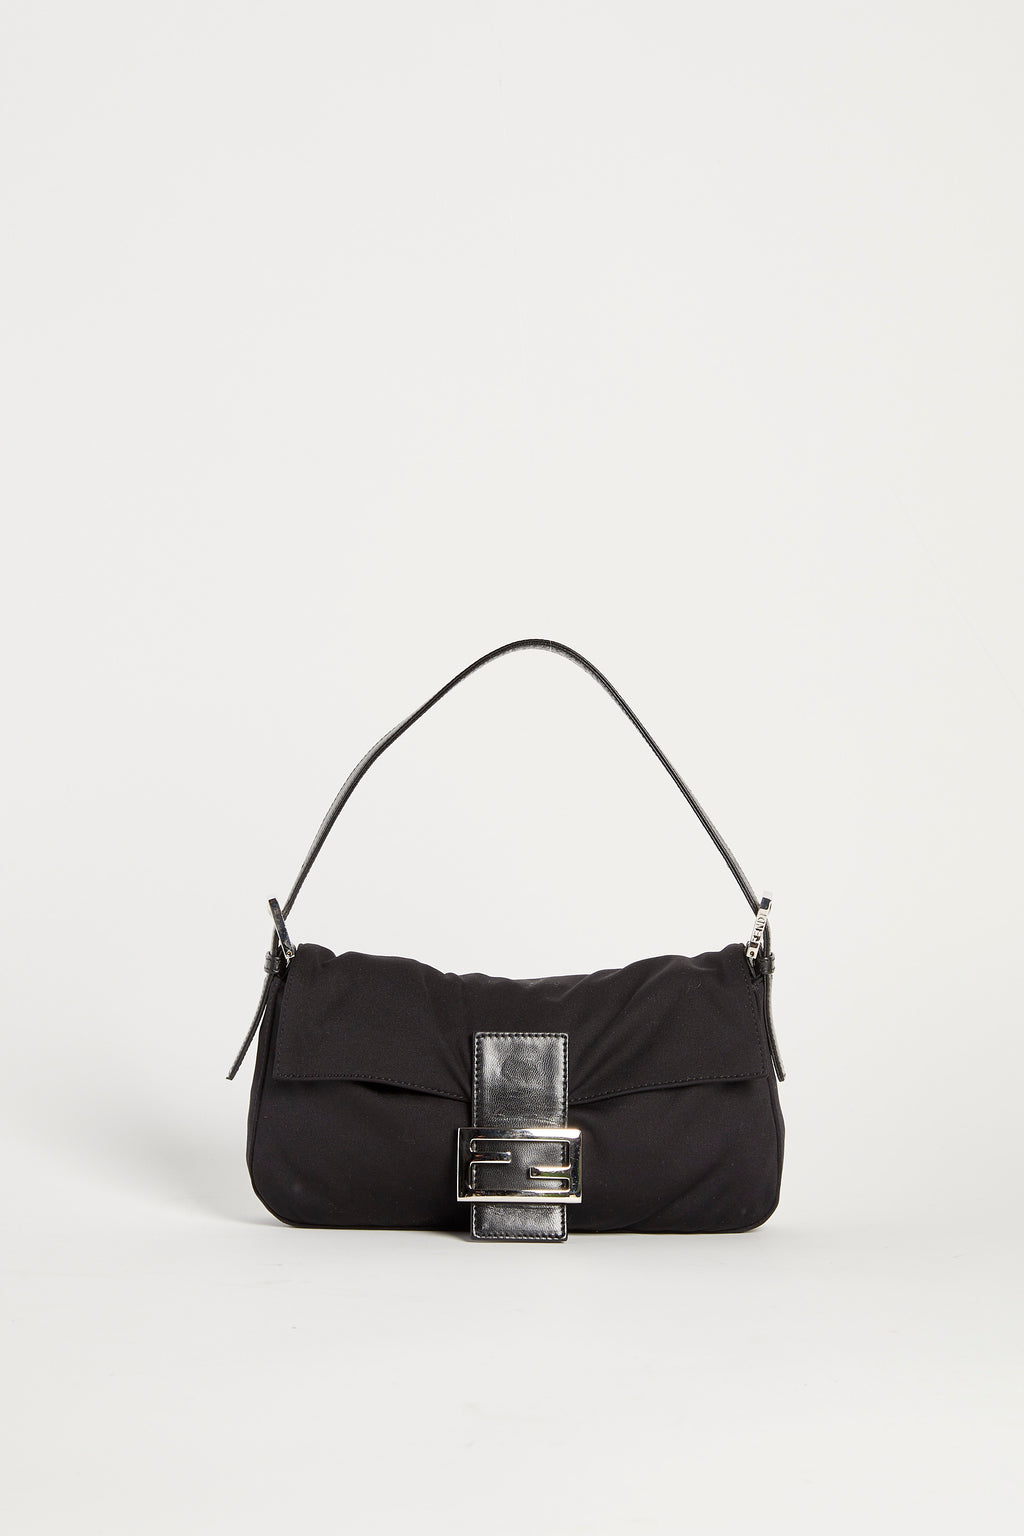 Vintage Fendi Black Neoprene Baguette Shoulder Bag